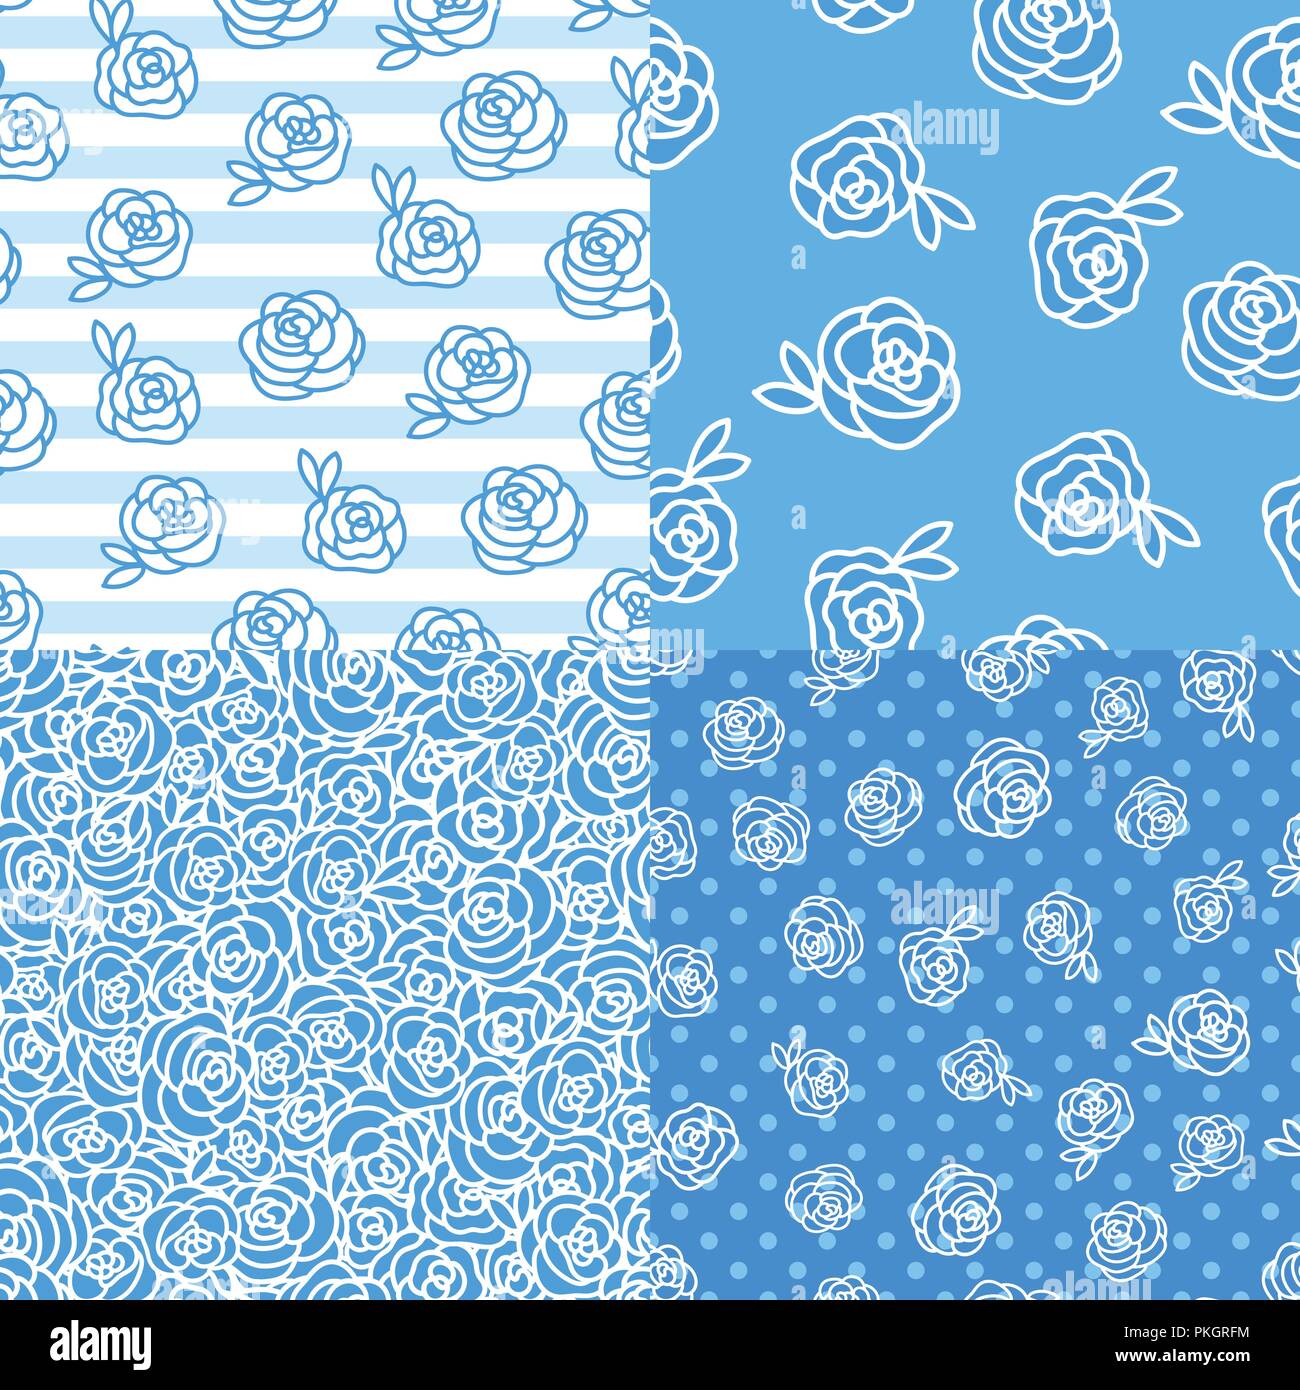 Impostare il vettore inverno seamless pattern. Rose fiore del disegno a mano illustrazione bianco isolato su sfondo blu. Illustrazione Vettoriale